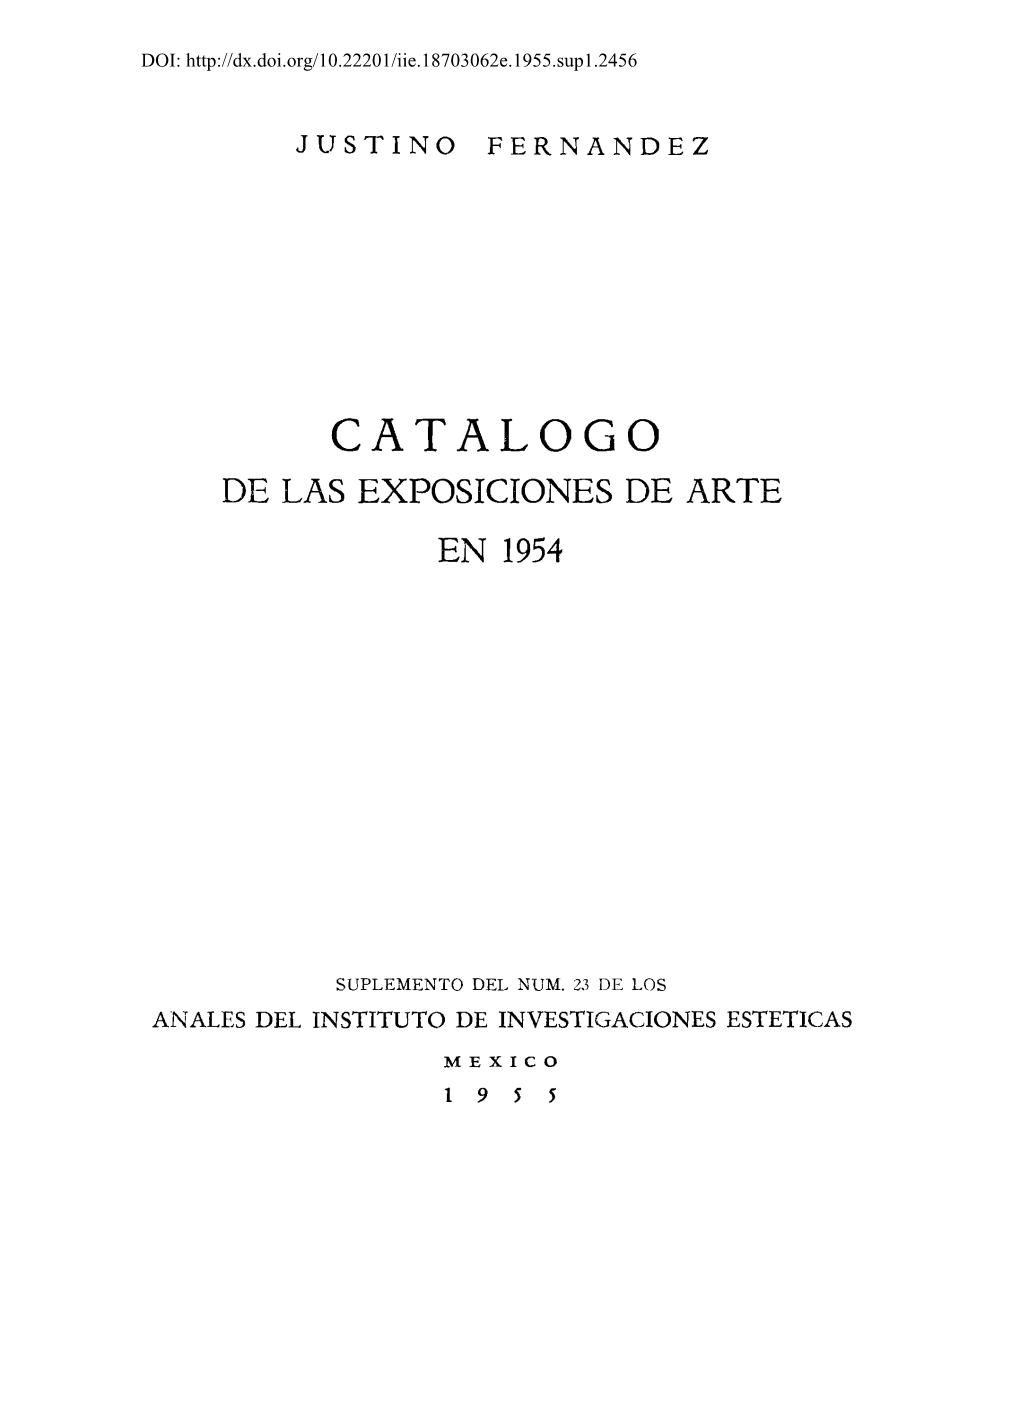 Catalogo De Las Exposiciones De Arte En 1954